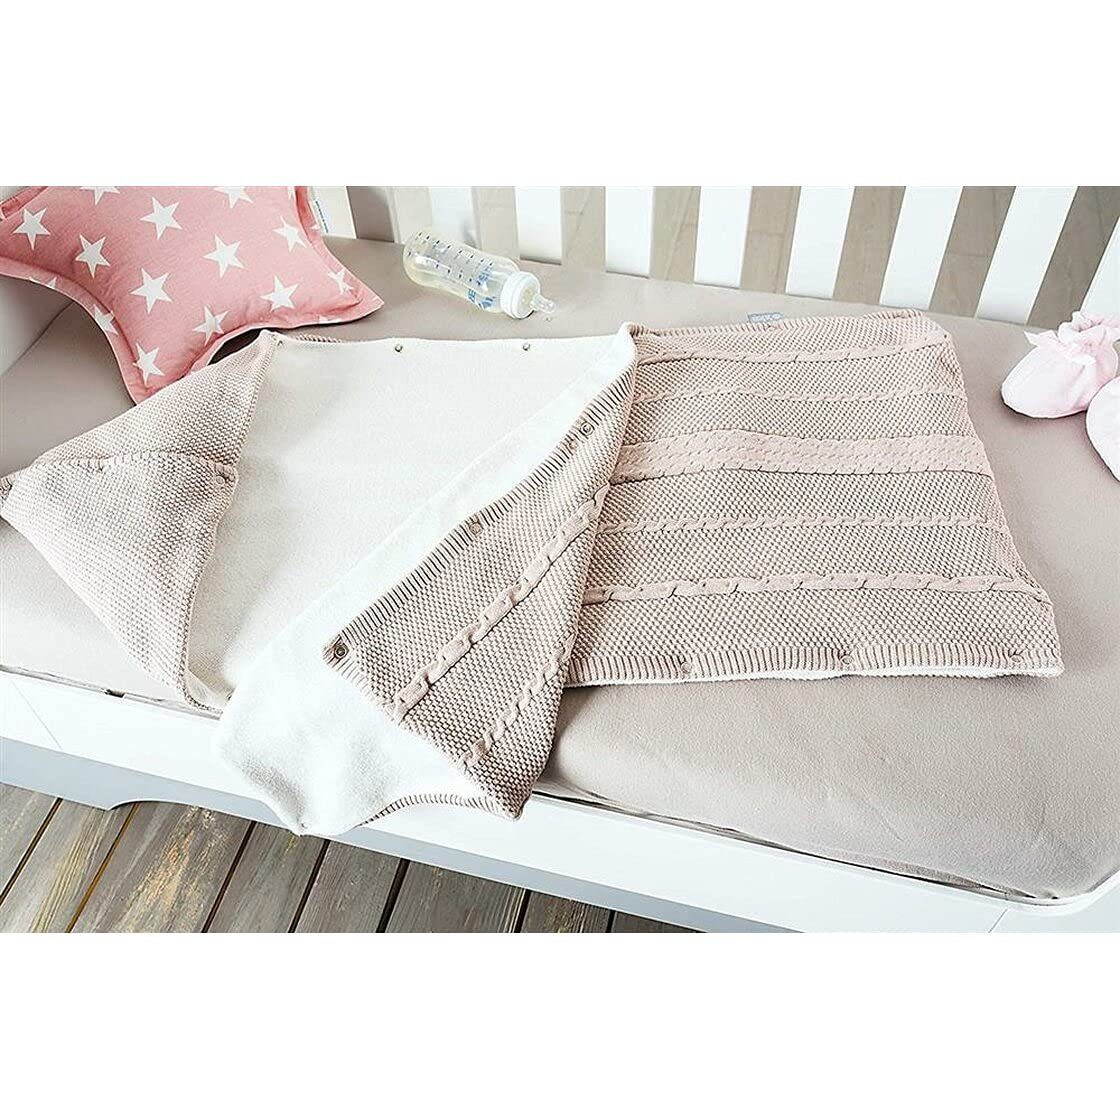 Babydecke Schlafsack gestrickt 100% Geschenk-Verpackung Design, in hübscher Baumwolle, Natur SEI